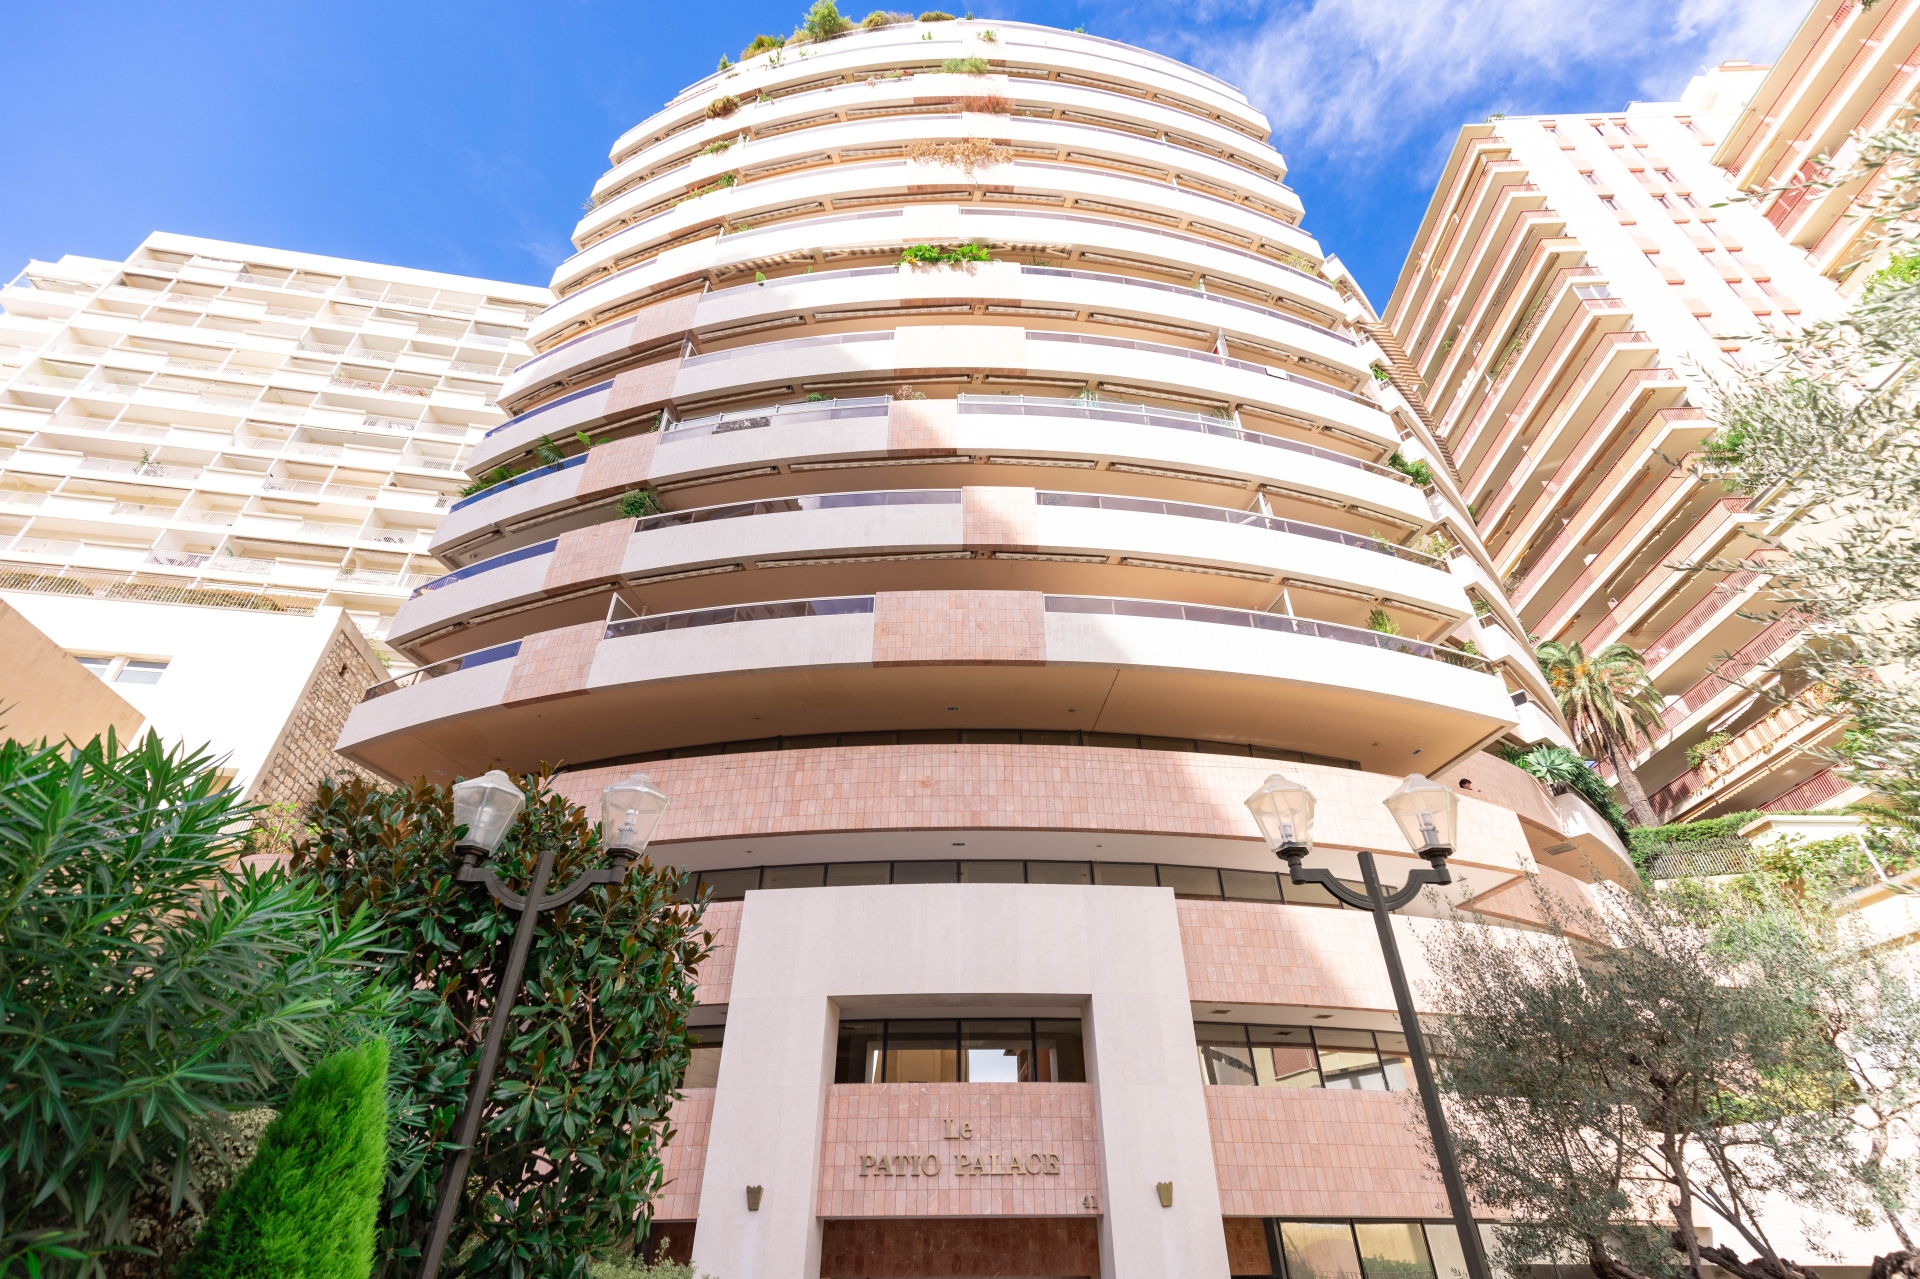 Dotta Appartement de 5 pieces a vendre - PATIO PALACE - Jardin Exotique - Monaco - img074a4576